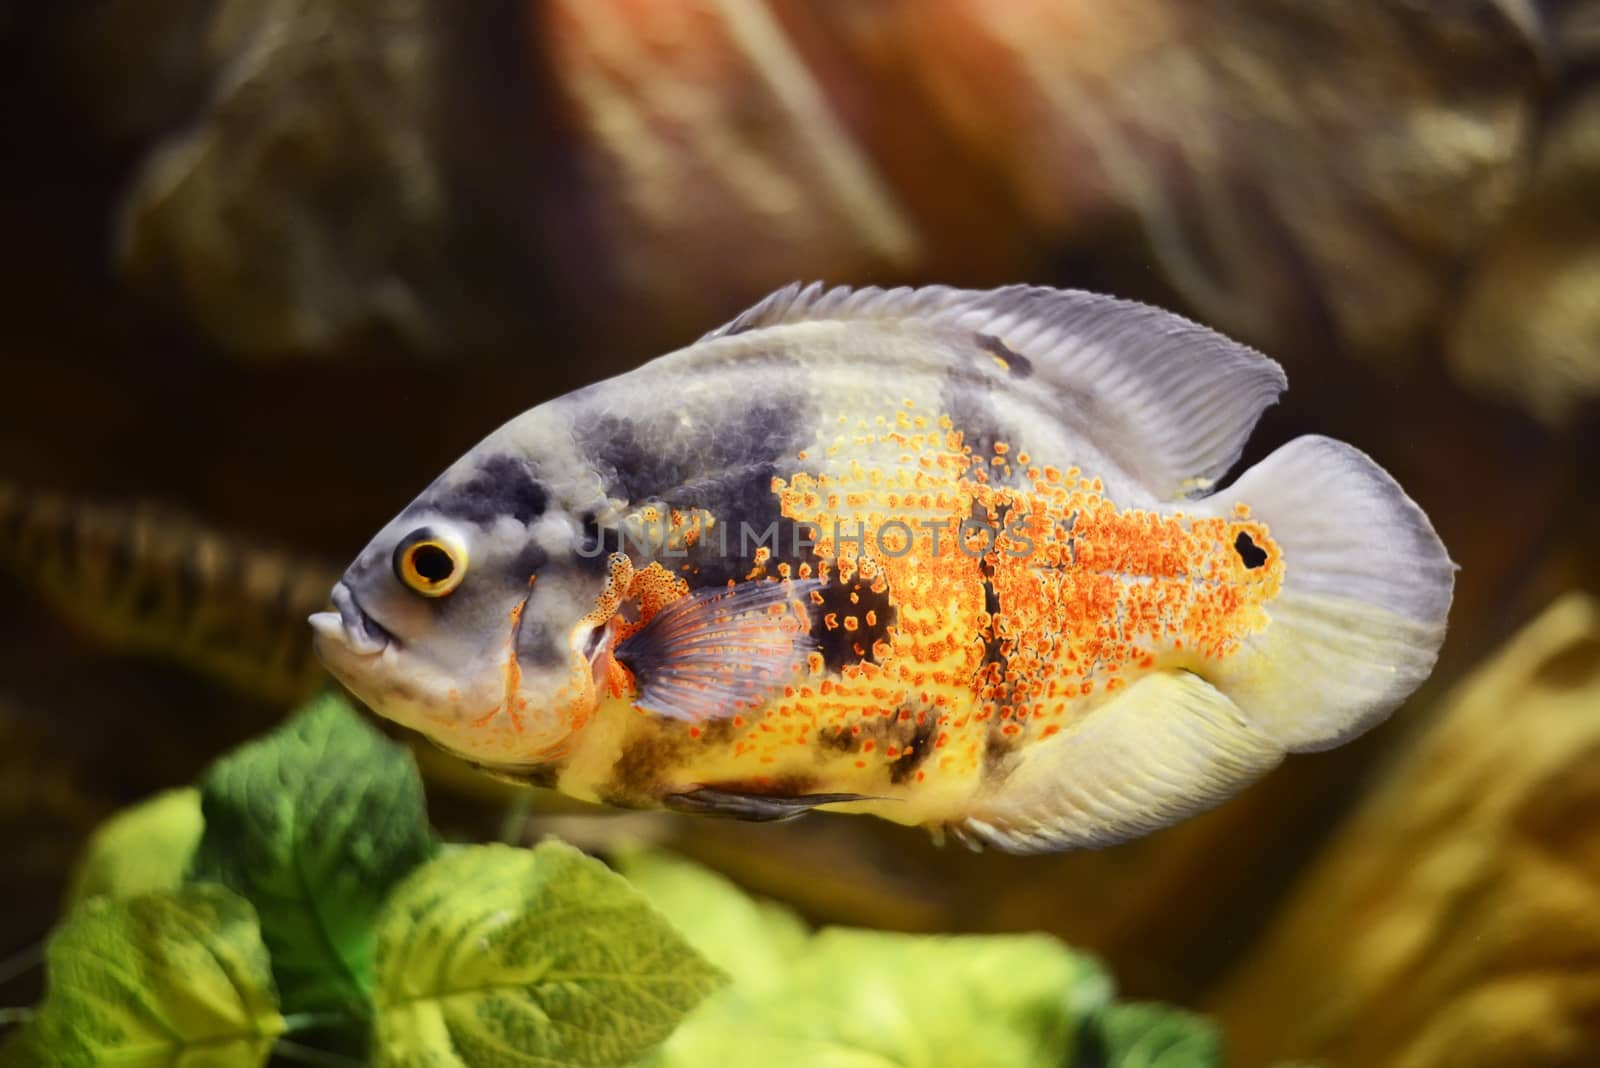 Oscar fish, Astronotus ocellatus, Marble fish in aquarium